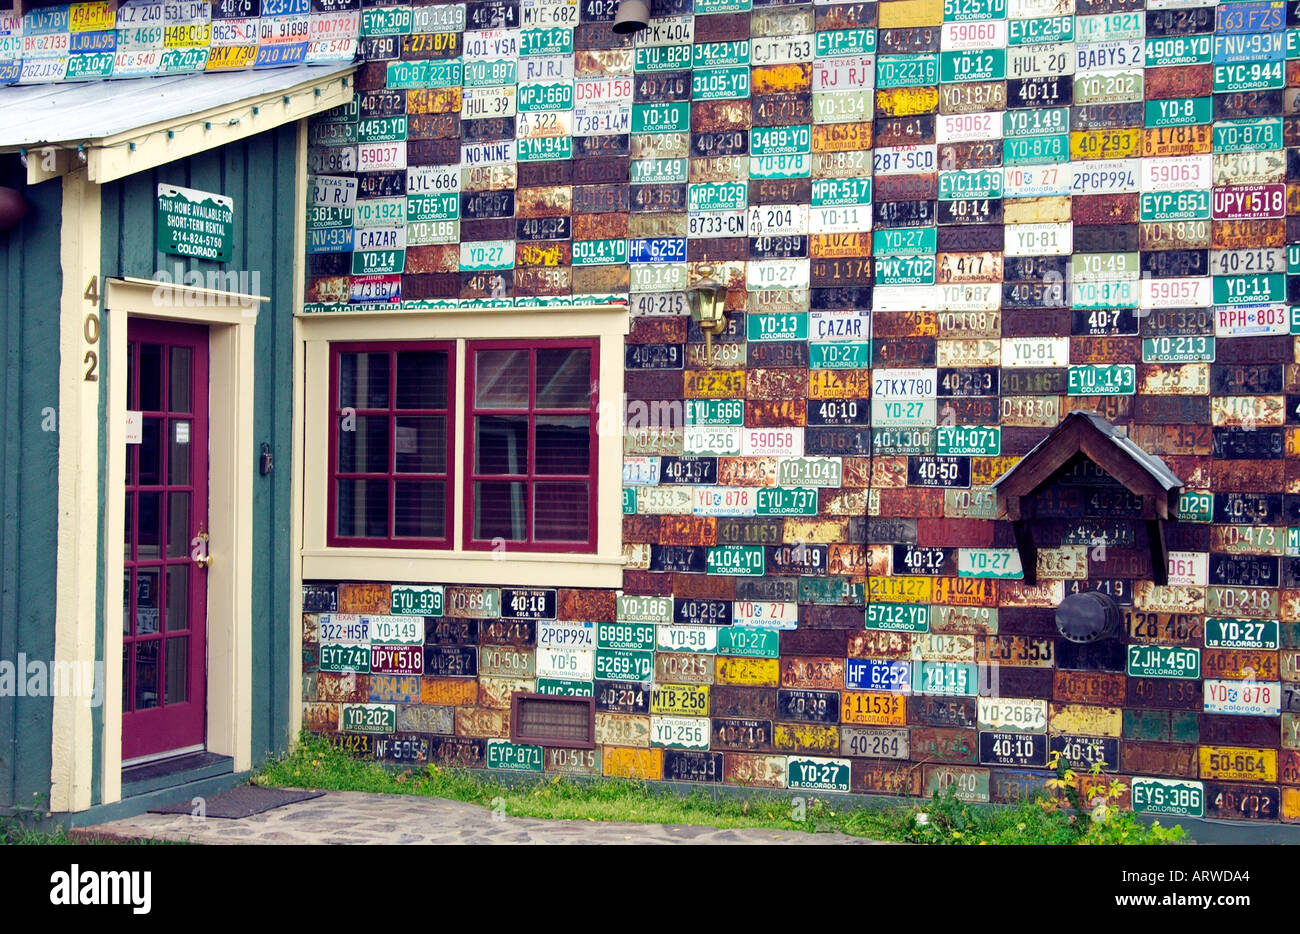 Kfz Kennzeichen Wand in Crested Butte Colorado USA Stockfotografie - Alamy